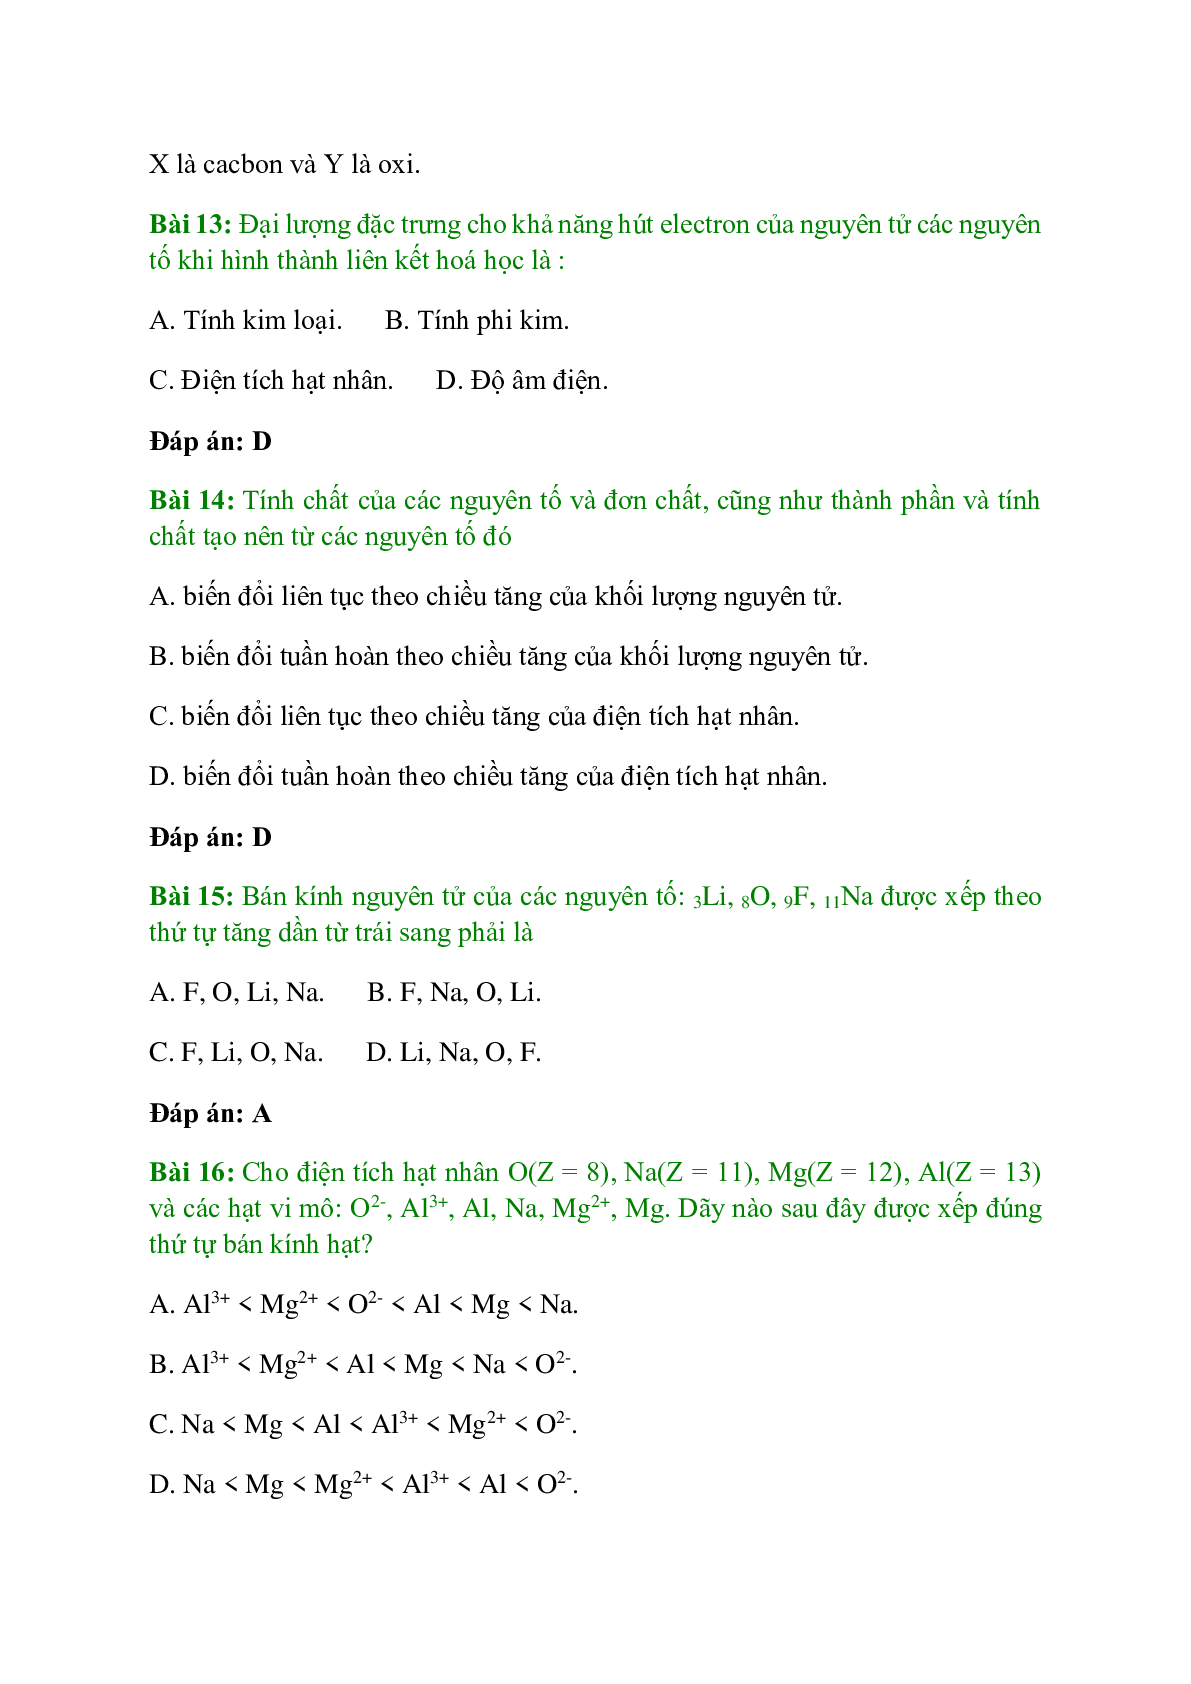 Trắc nghiệm Sự biến đổi tuần hoàn tính chất của các nguyên tố hóa học - Định luật tuần hoàn có đáp án - Hóa học 10 (trang 5)